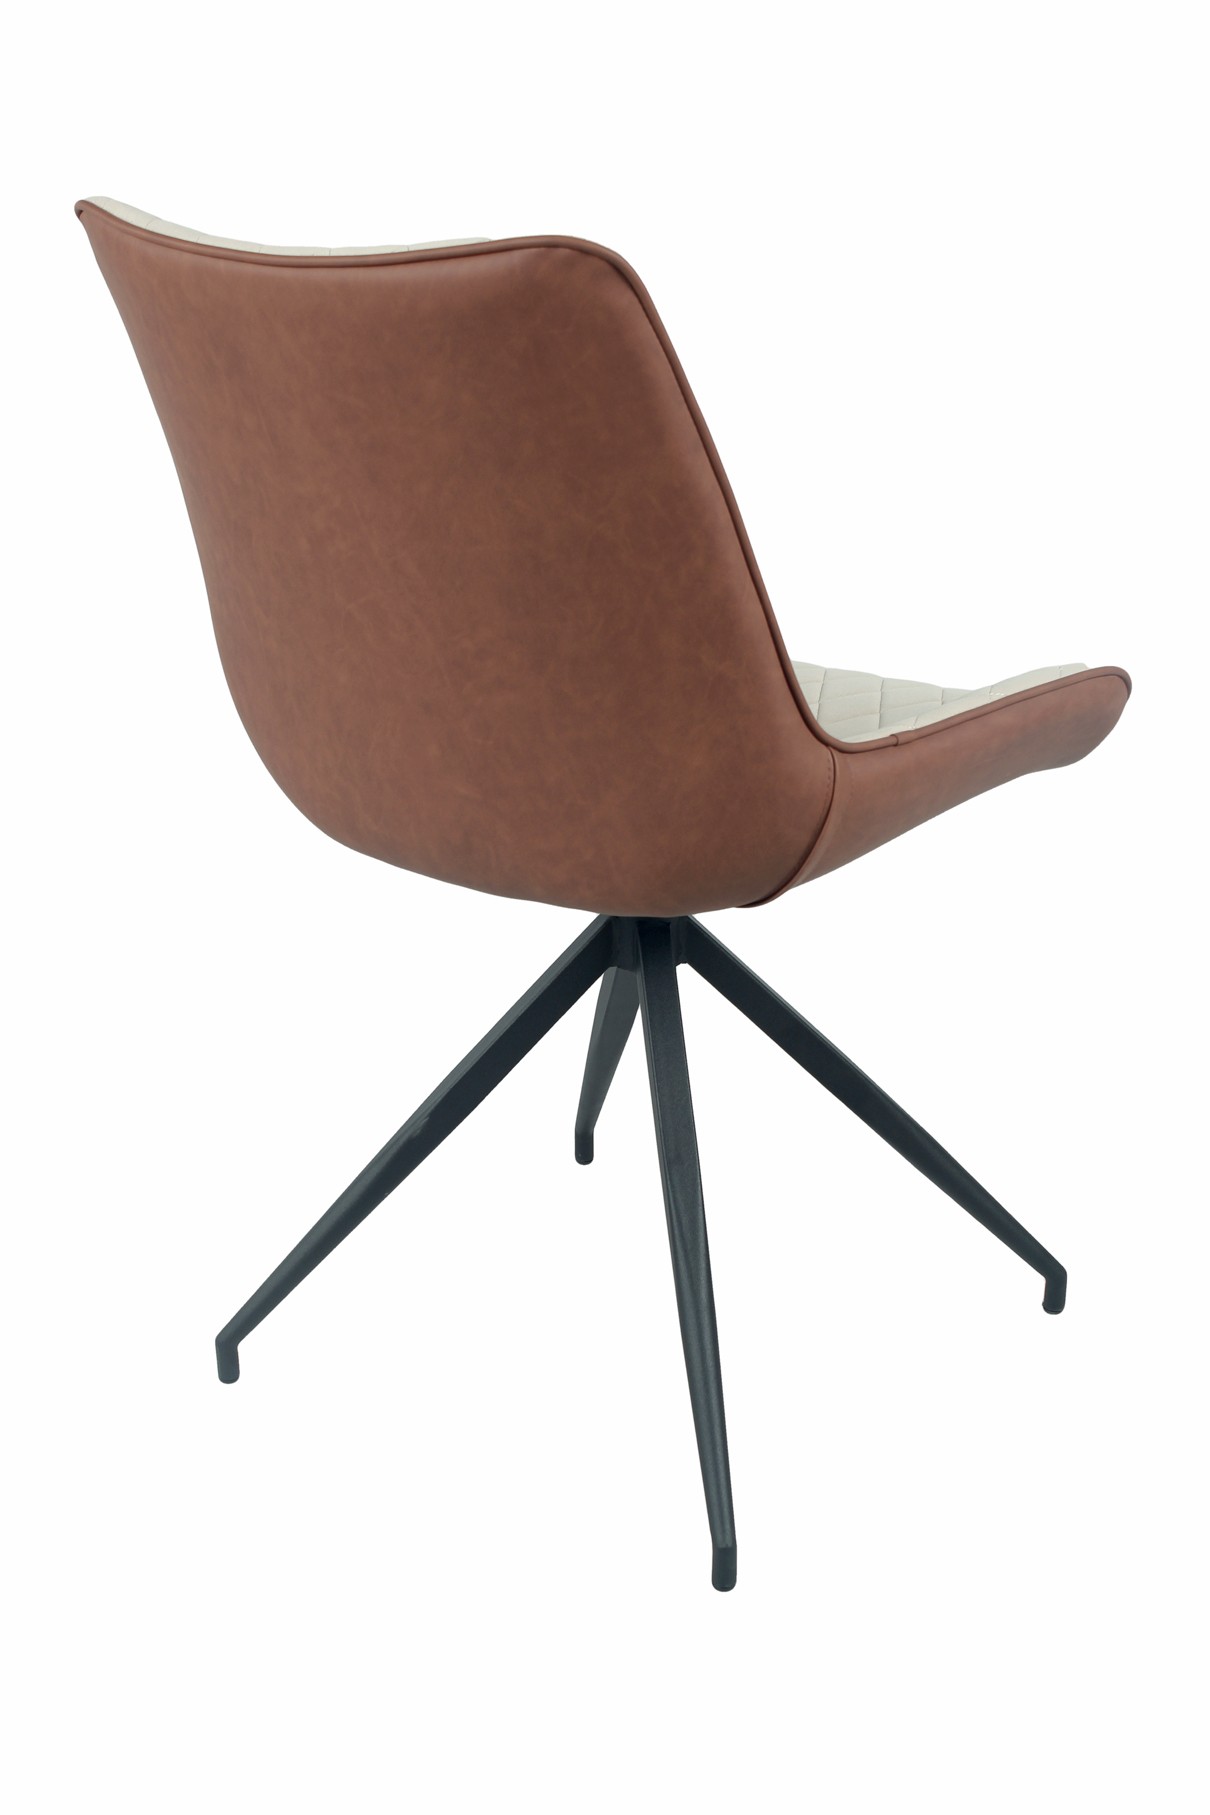 Levně Estila Moderní kožená jídelní židle Vidar z eko kůže s černými kovovými nožičkami dvoutónová béžová hnědá 88cm